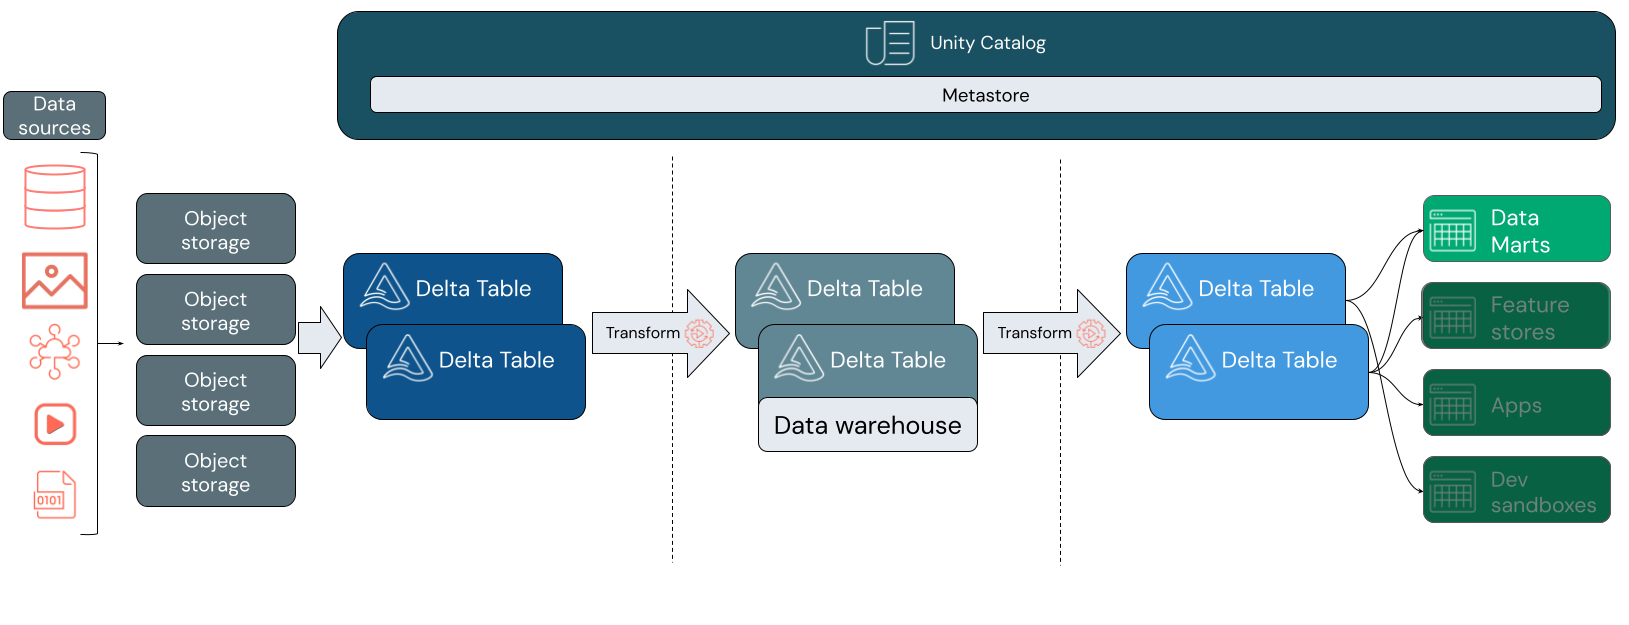 بنية Lakehouse مع طبقة علوية تتضمن تخزين البيانات وهندسة البيانات وتدفق البيانات وعلوم البيانات وML